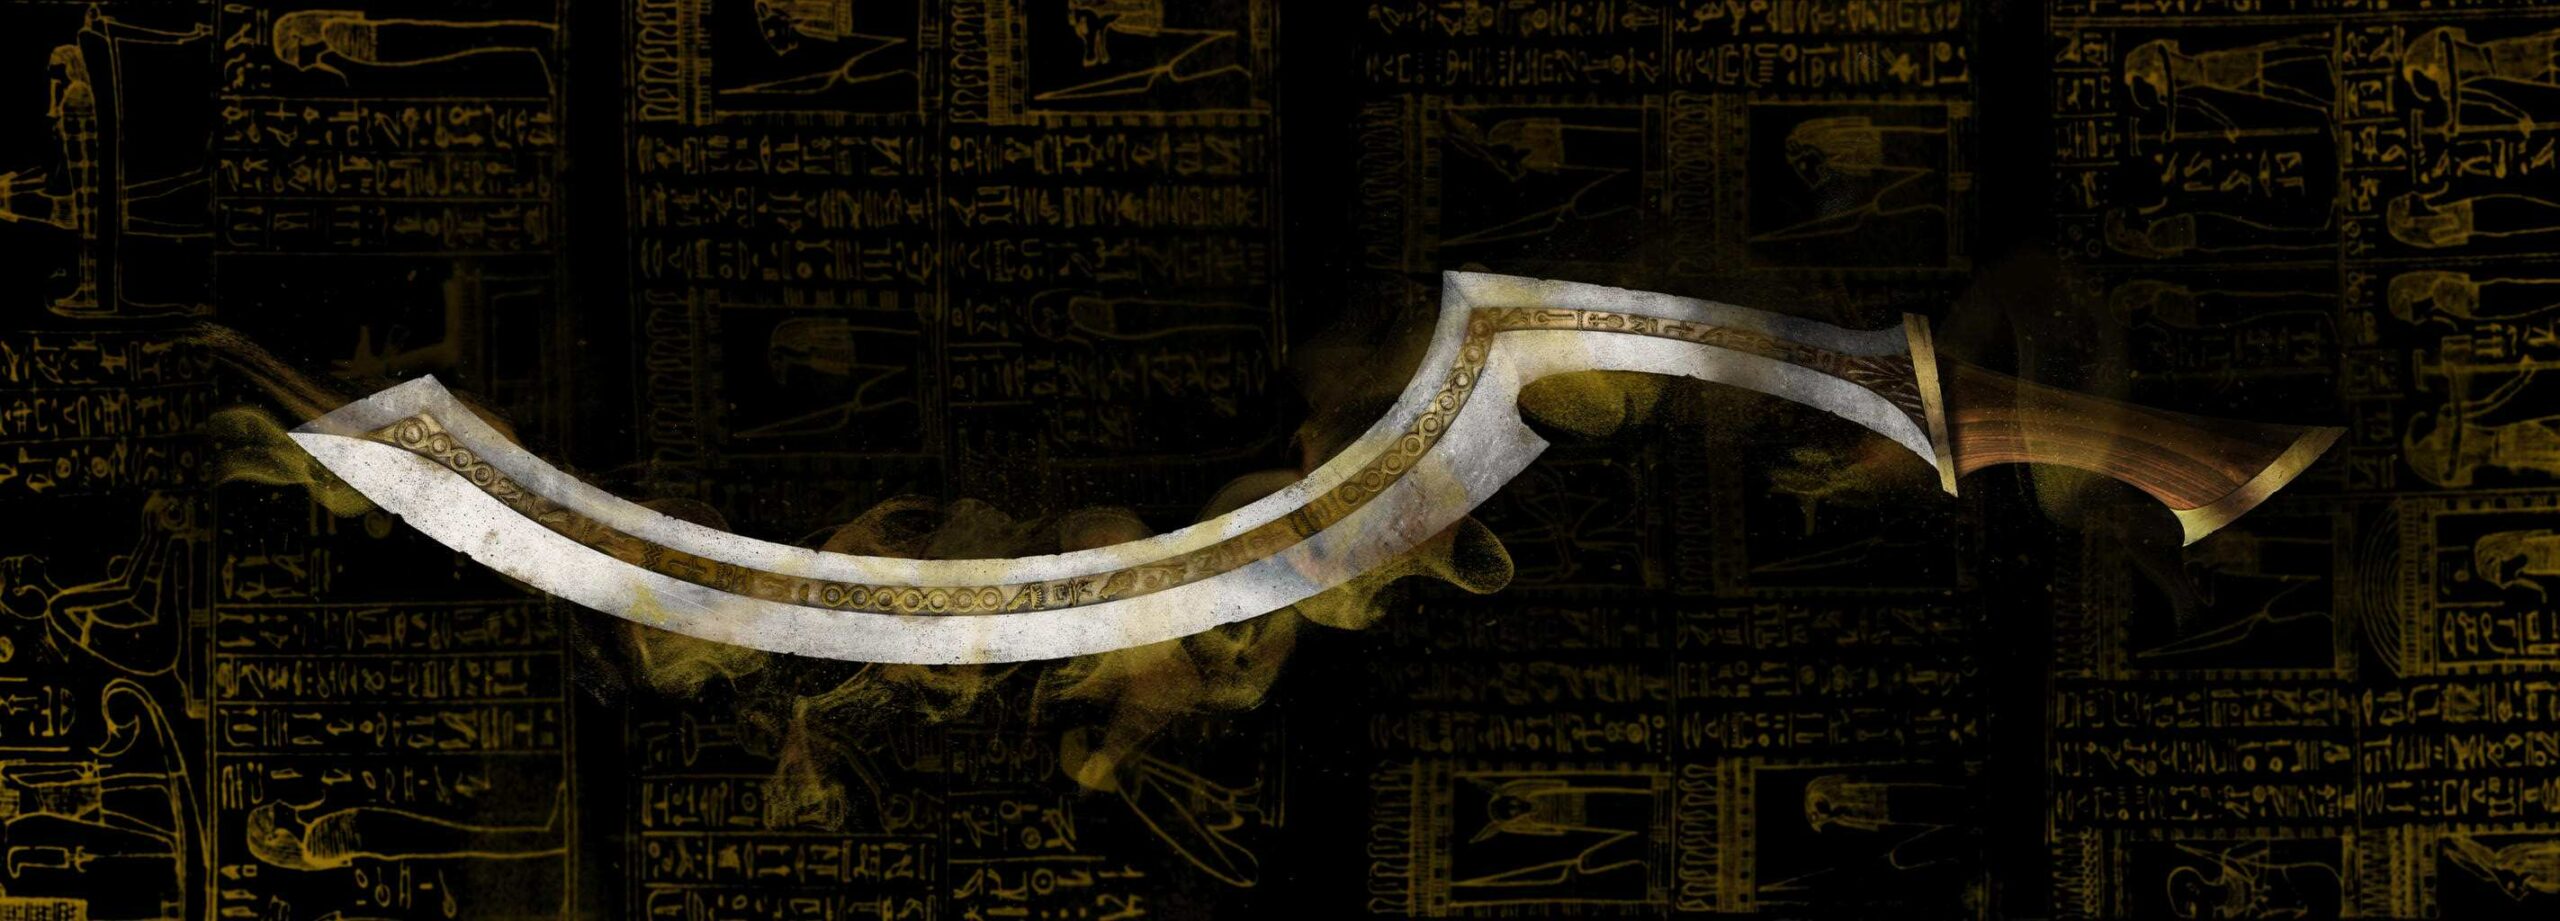 खोपेश तलवार: प्राचीन मिस्र के इतिहास को गढ़ने वाला प्रतिष्ठित हथियार 2